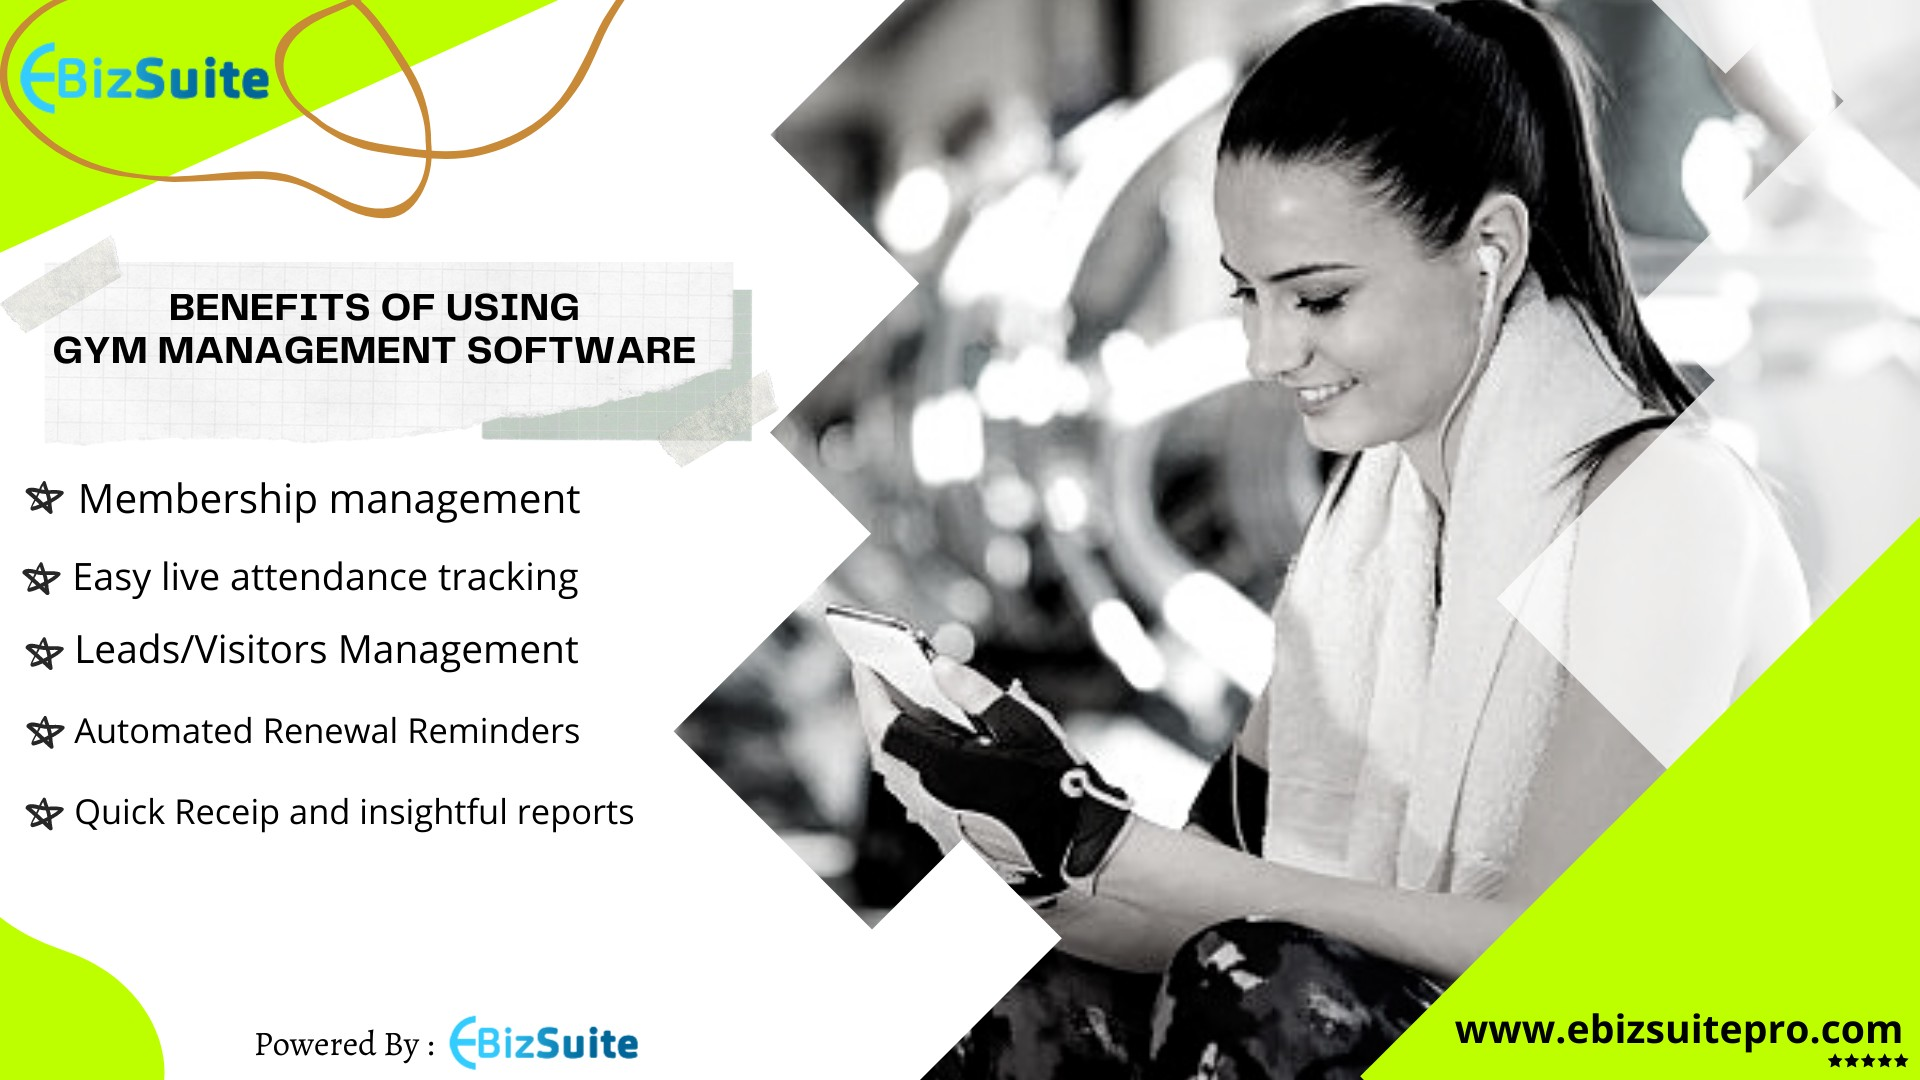 eBizSuitepro fitness management software india 